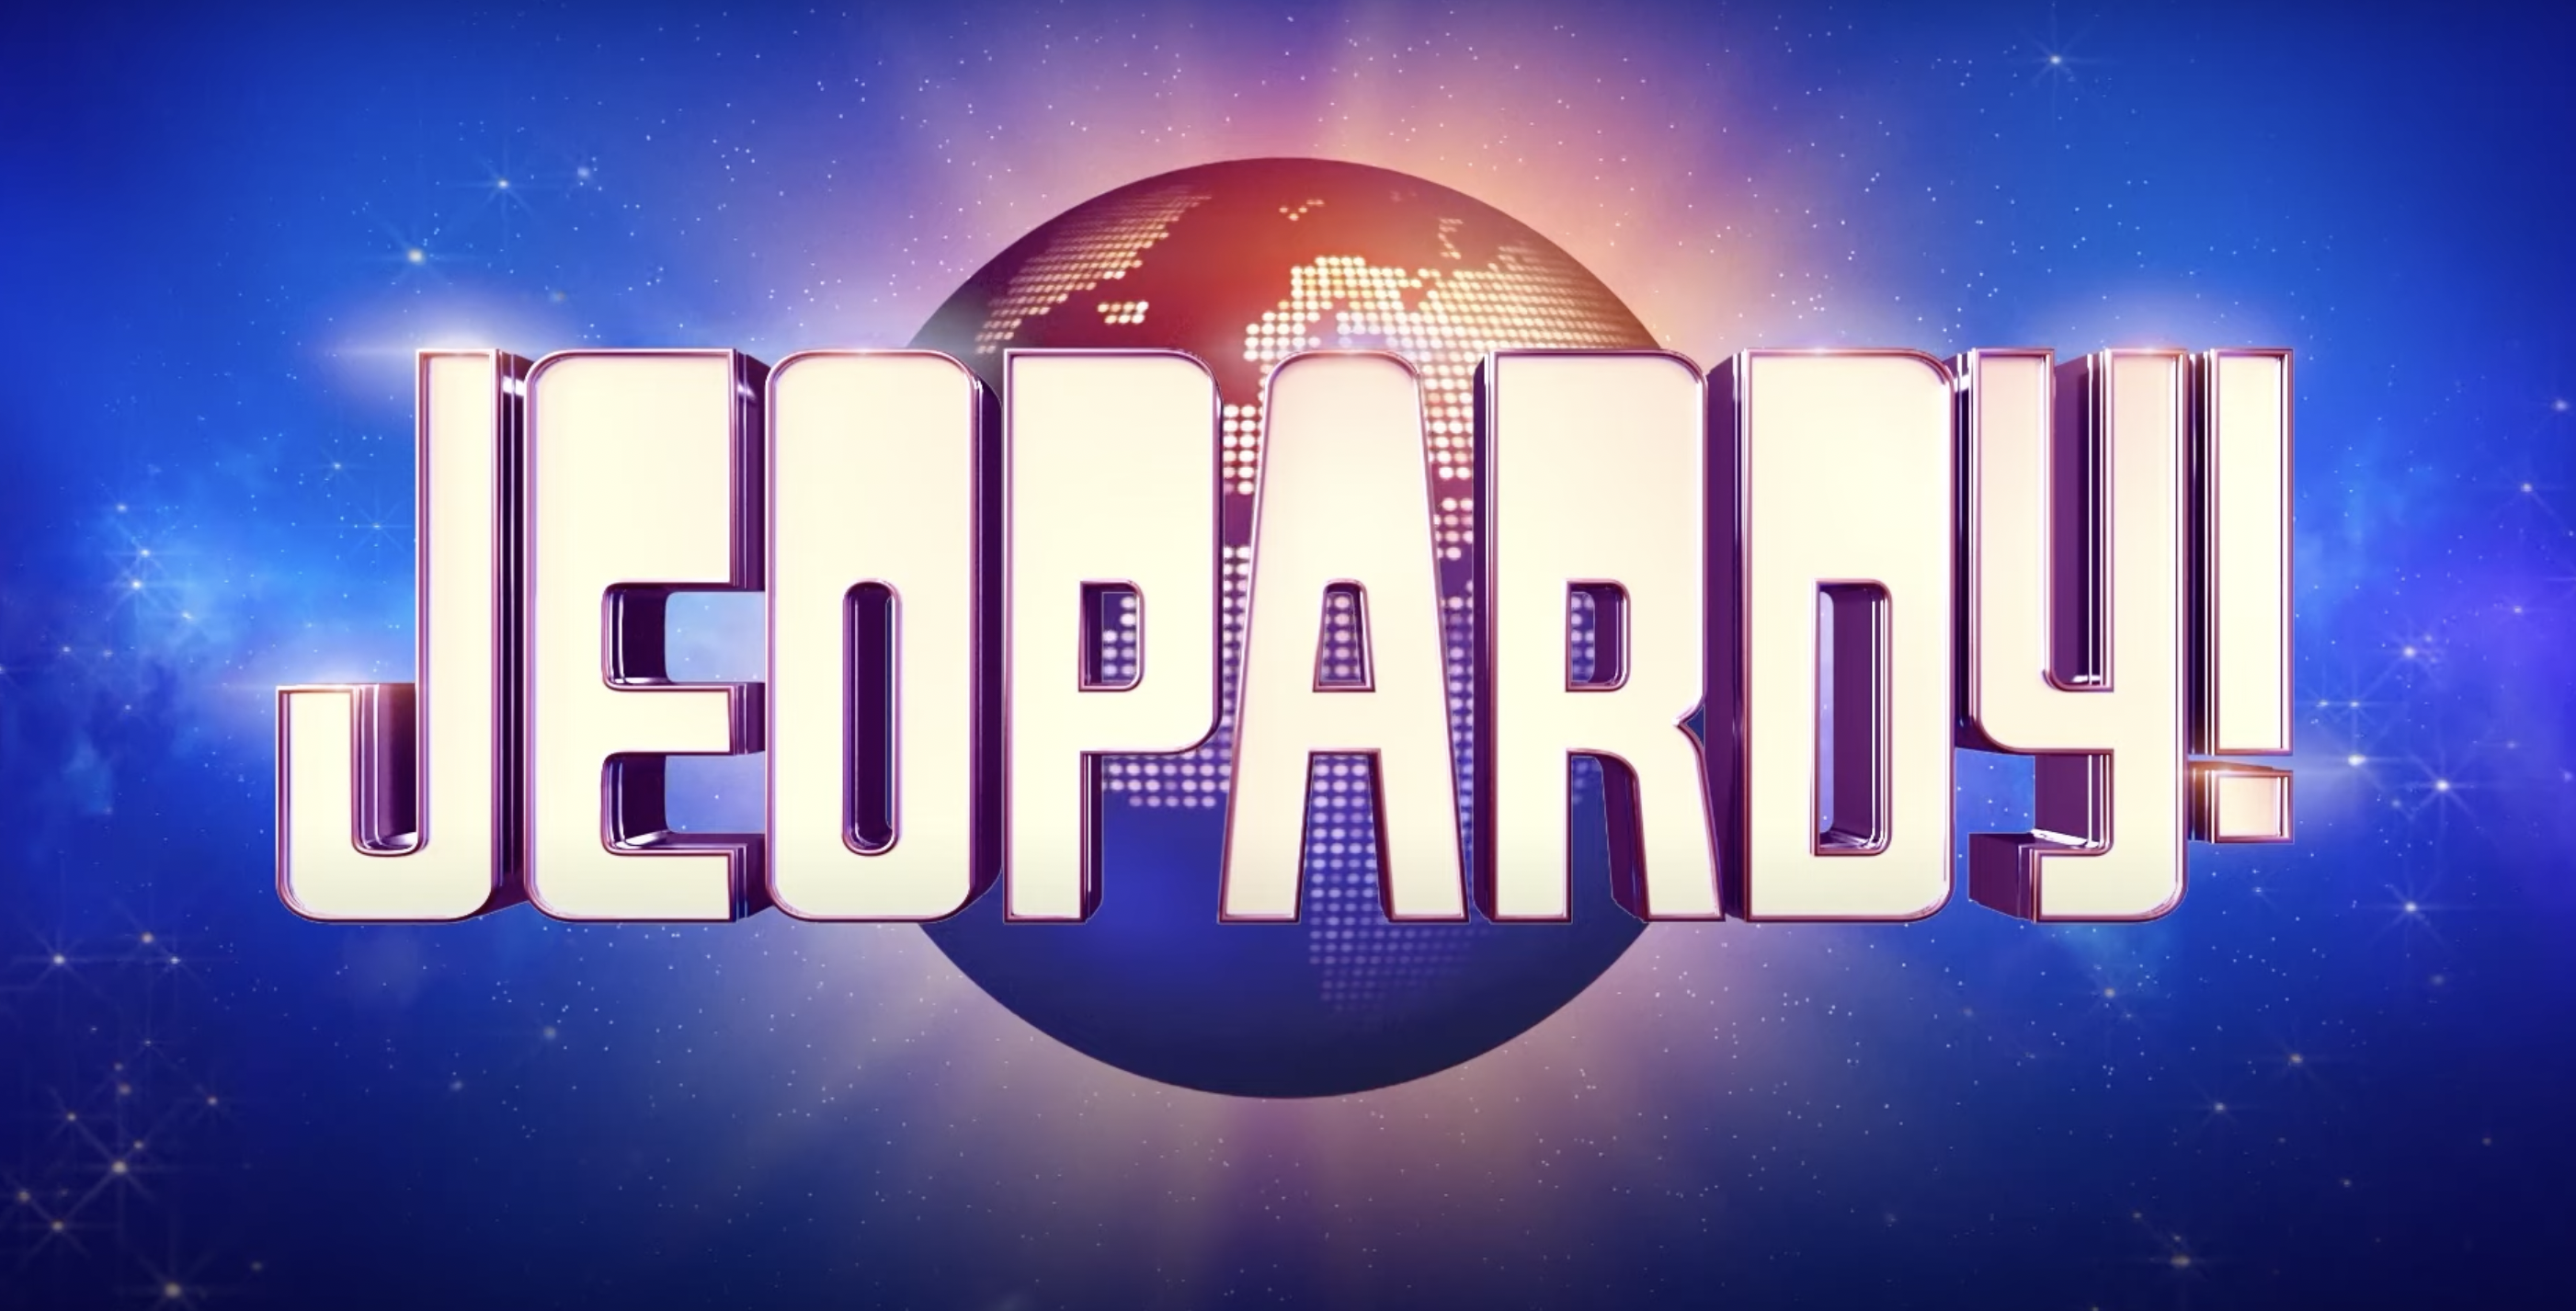 Jeopardy! logo